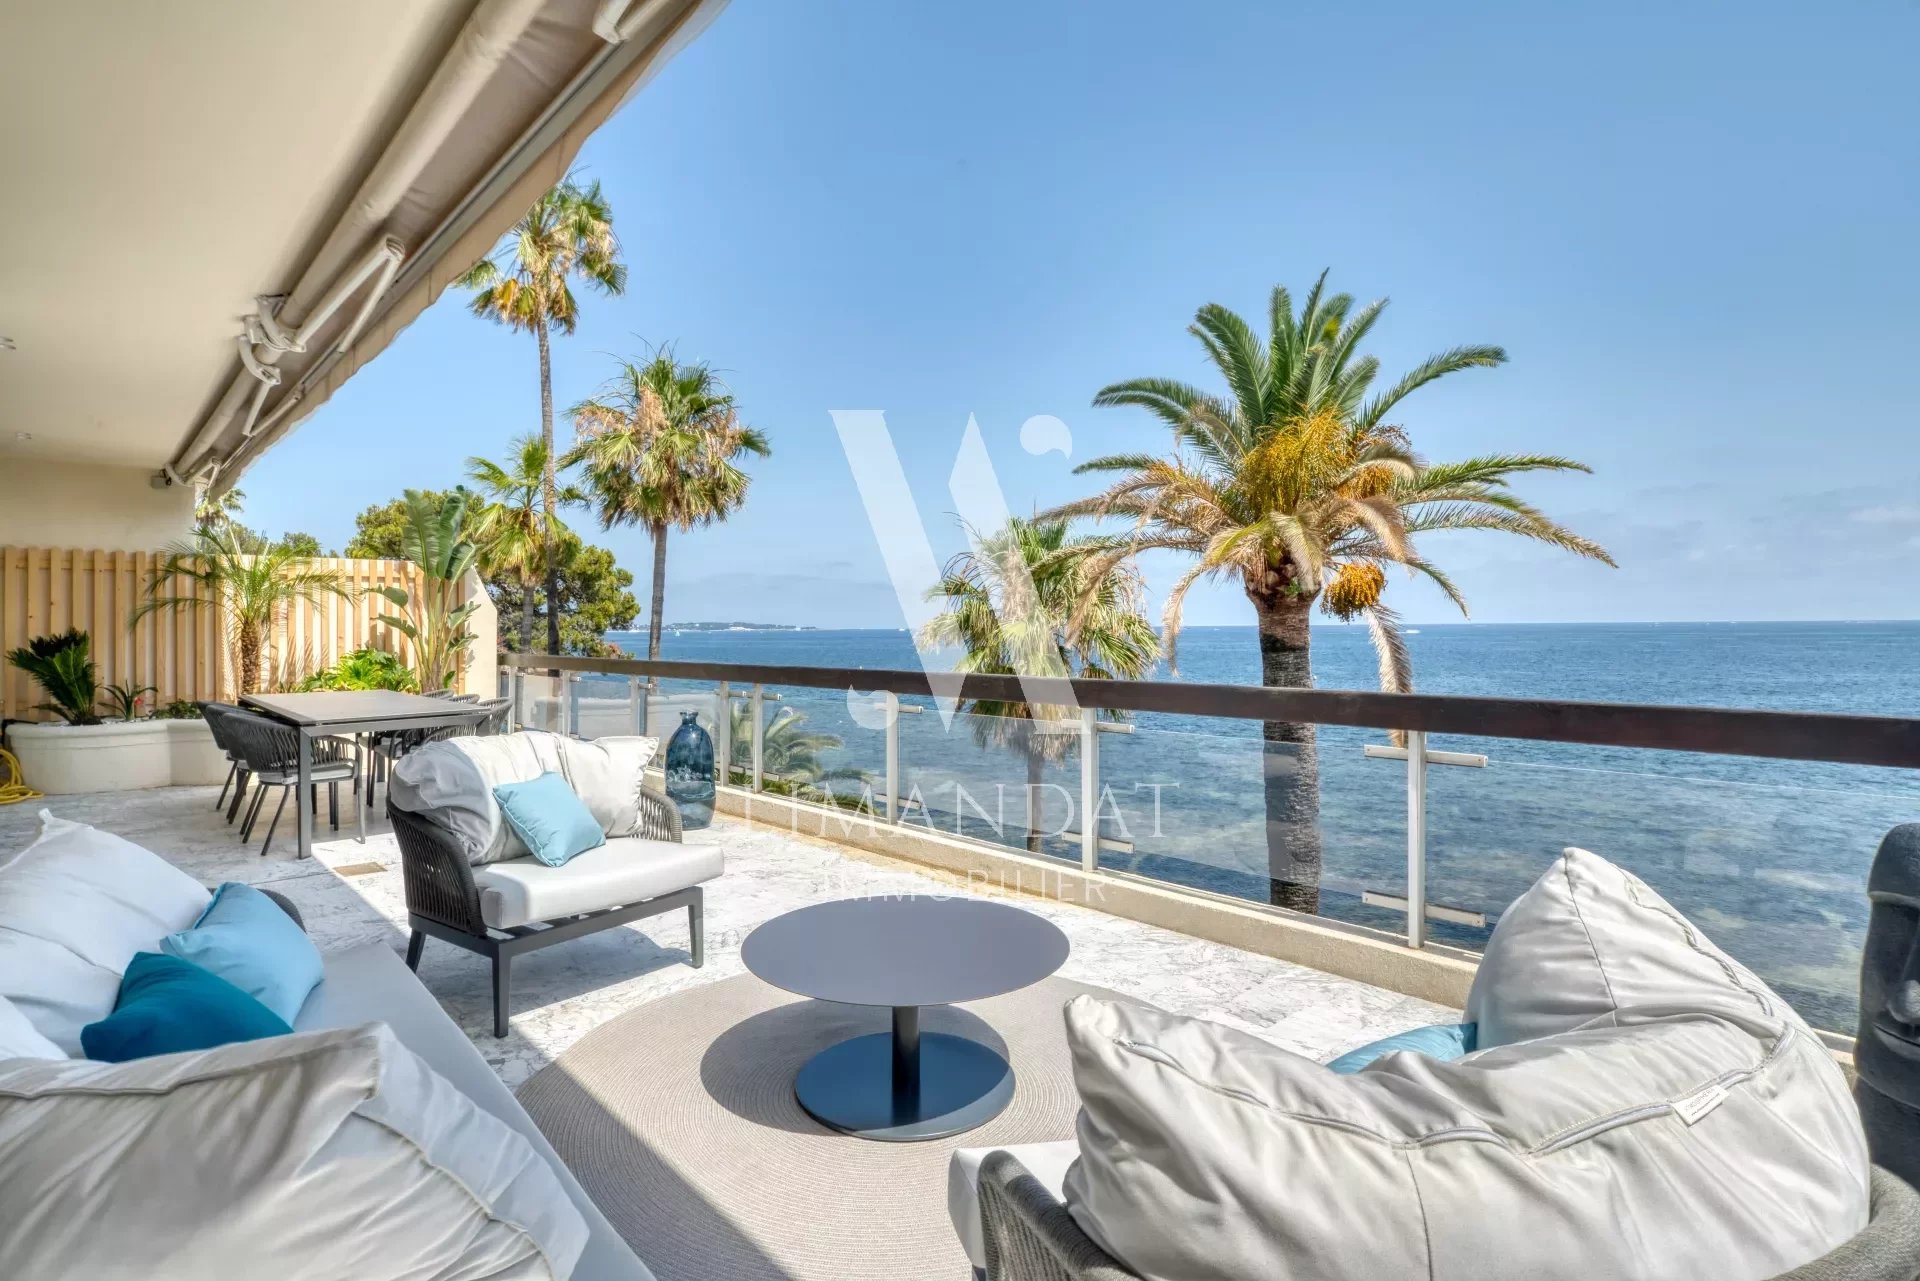 Cannes - Unique penthouse pied dans l'eau, 84m2, terrasse 40m2